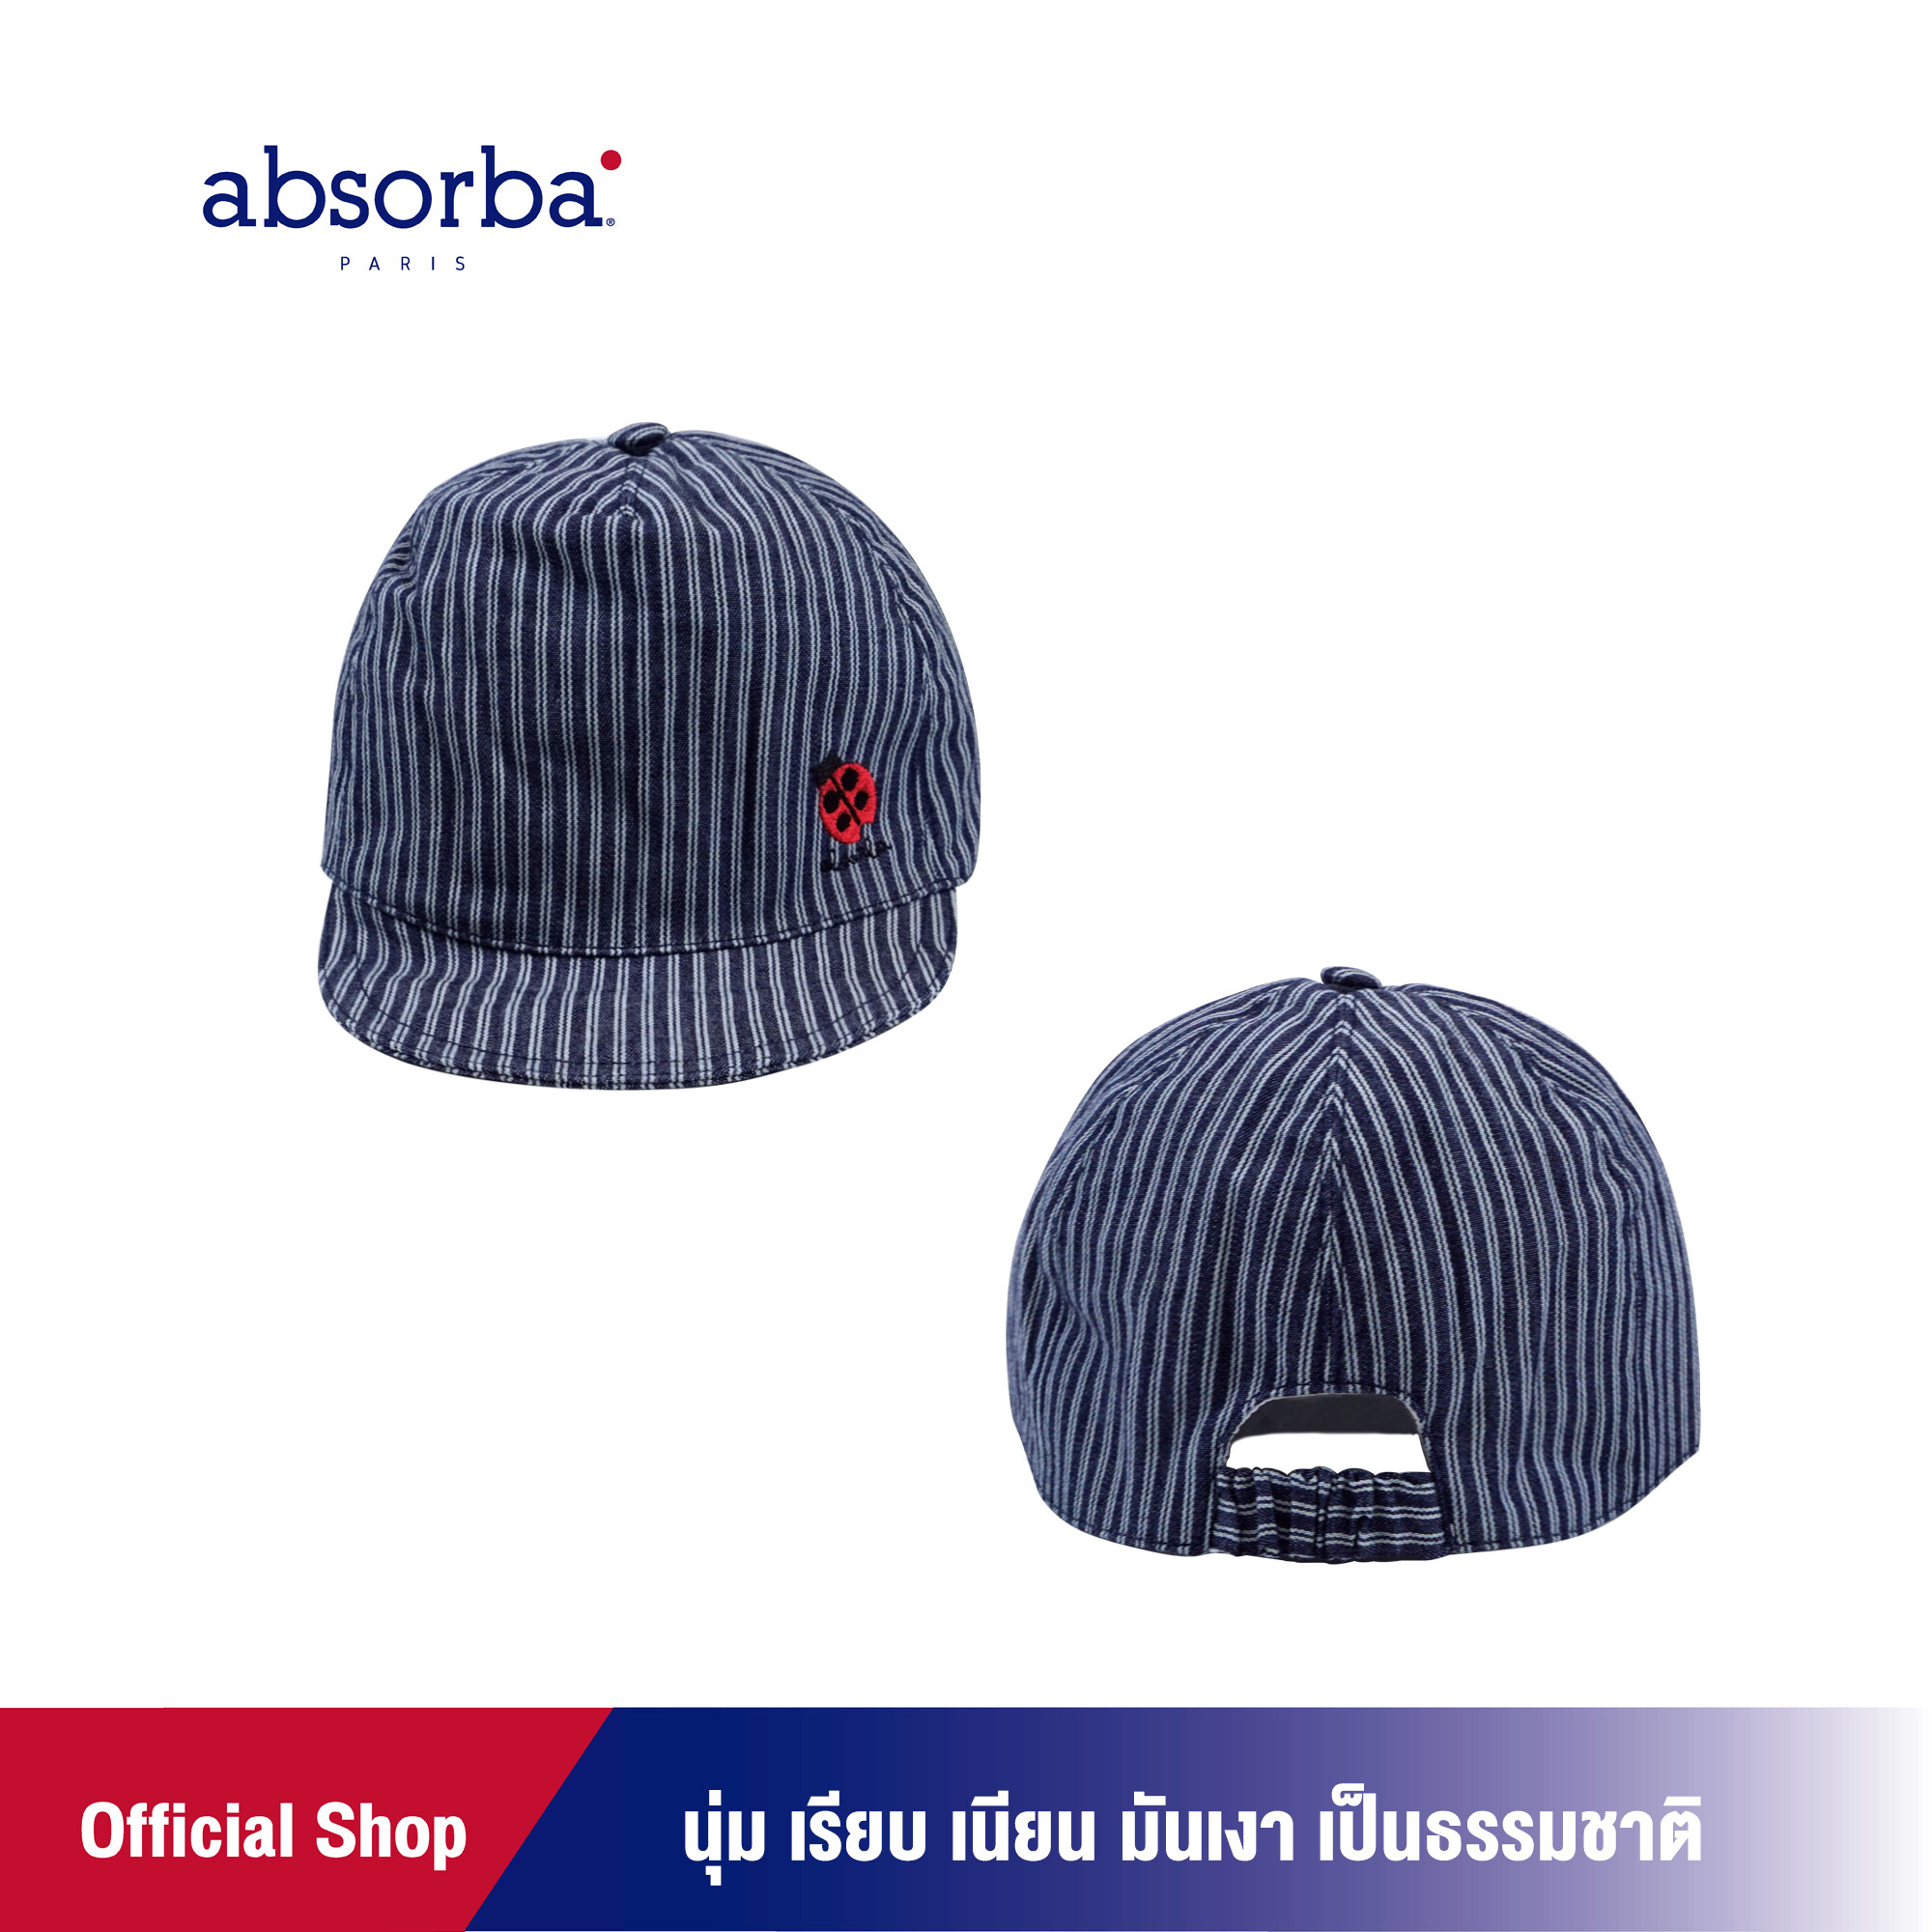 absorba (แอ็บซอร์บา) หมวกแก็บเด็กอ่อนชาย คอลเลคชั่น JARDIN สำหรับเด็ก 6 เดือน- 2 ปี แพ็ค 1 ใบ -R1E5021FA เสื้อผ้าเด็ก